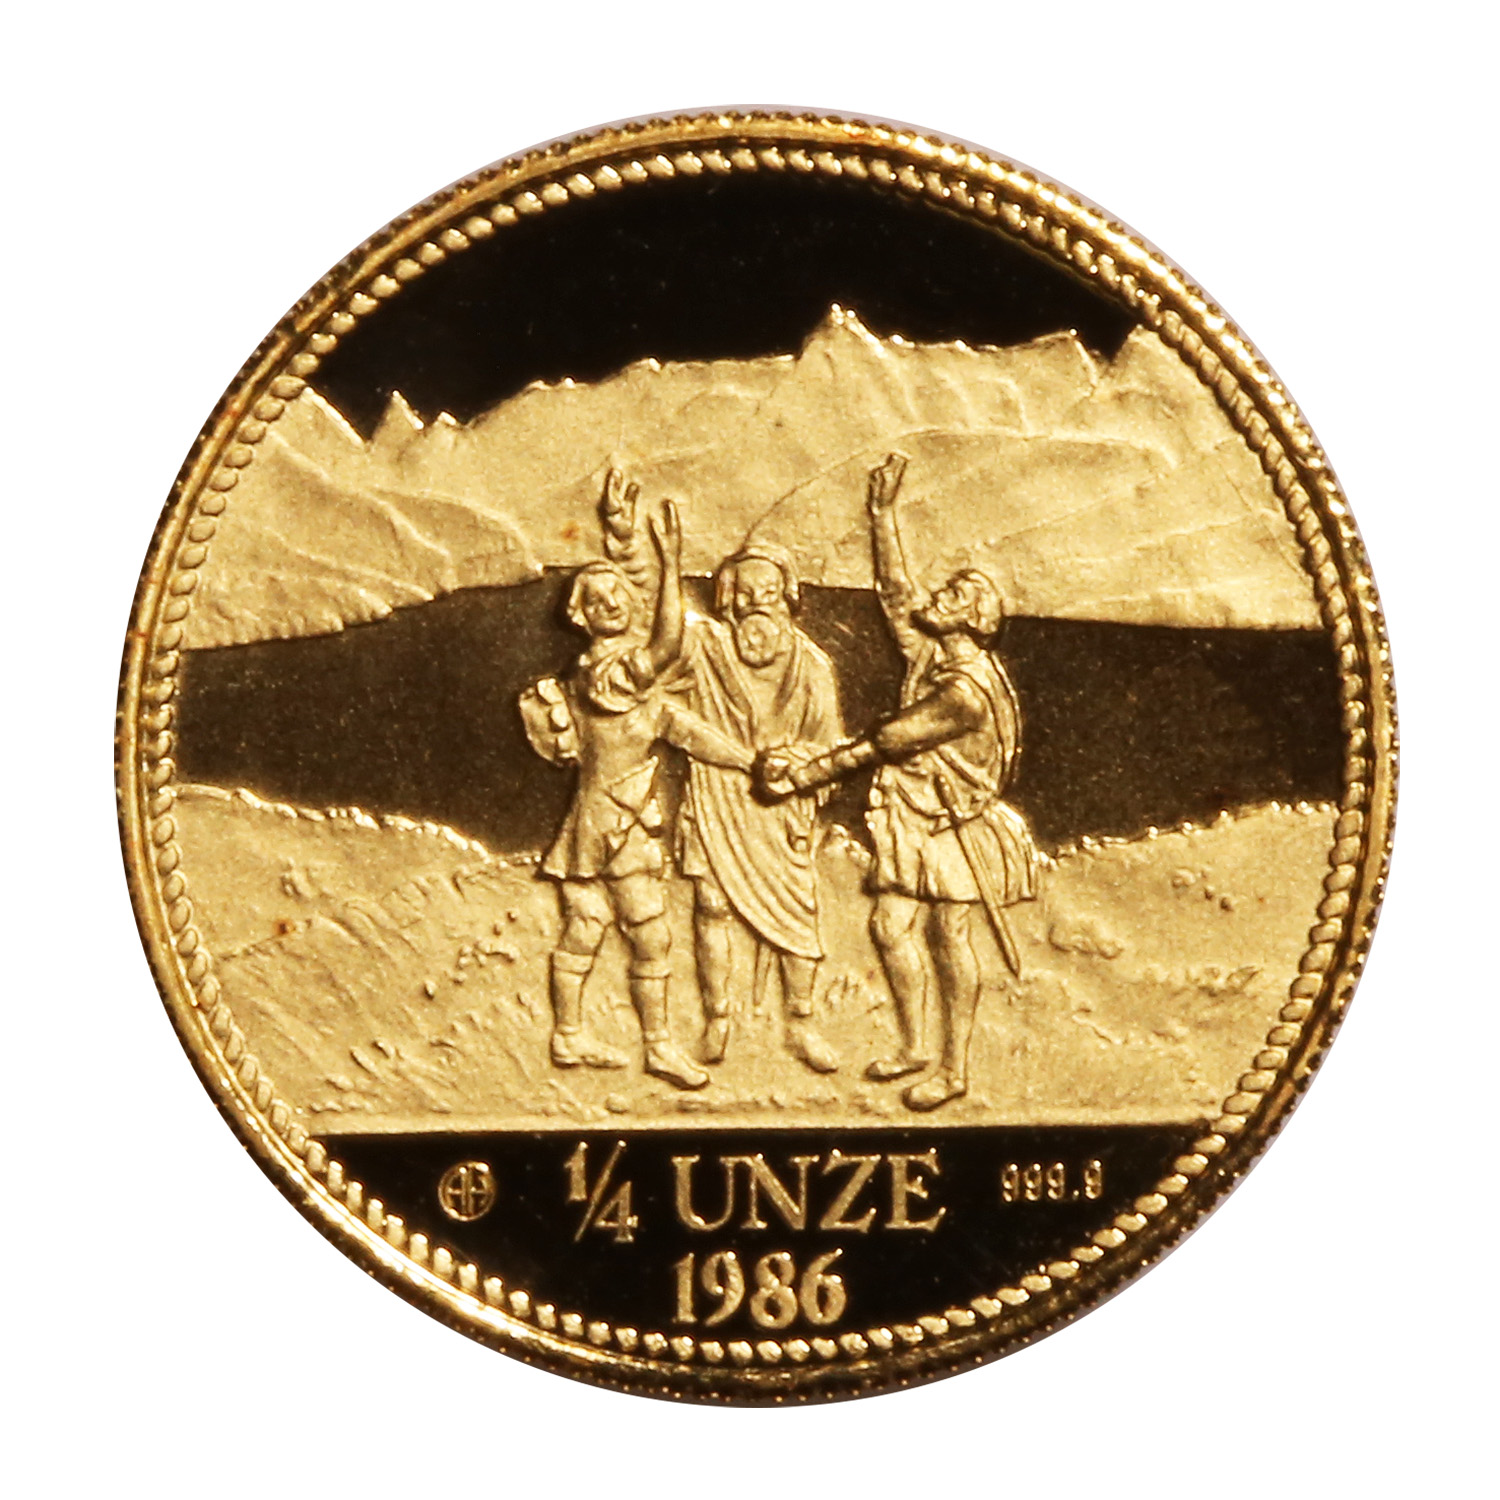 Switzerland 1/4 Unze Gold 1986 Eternal Pact PF